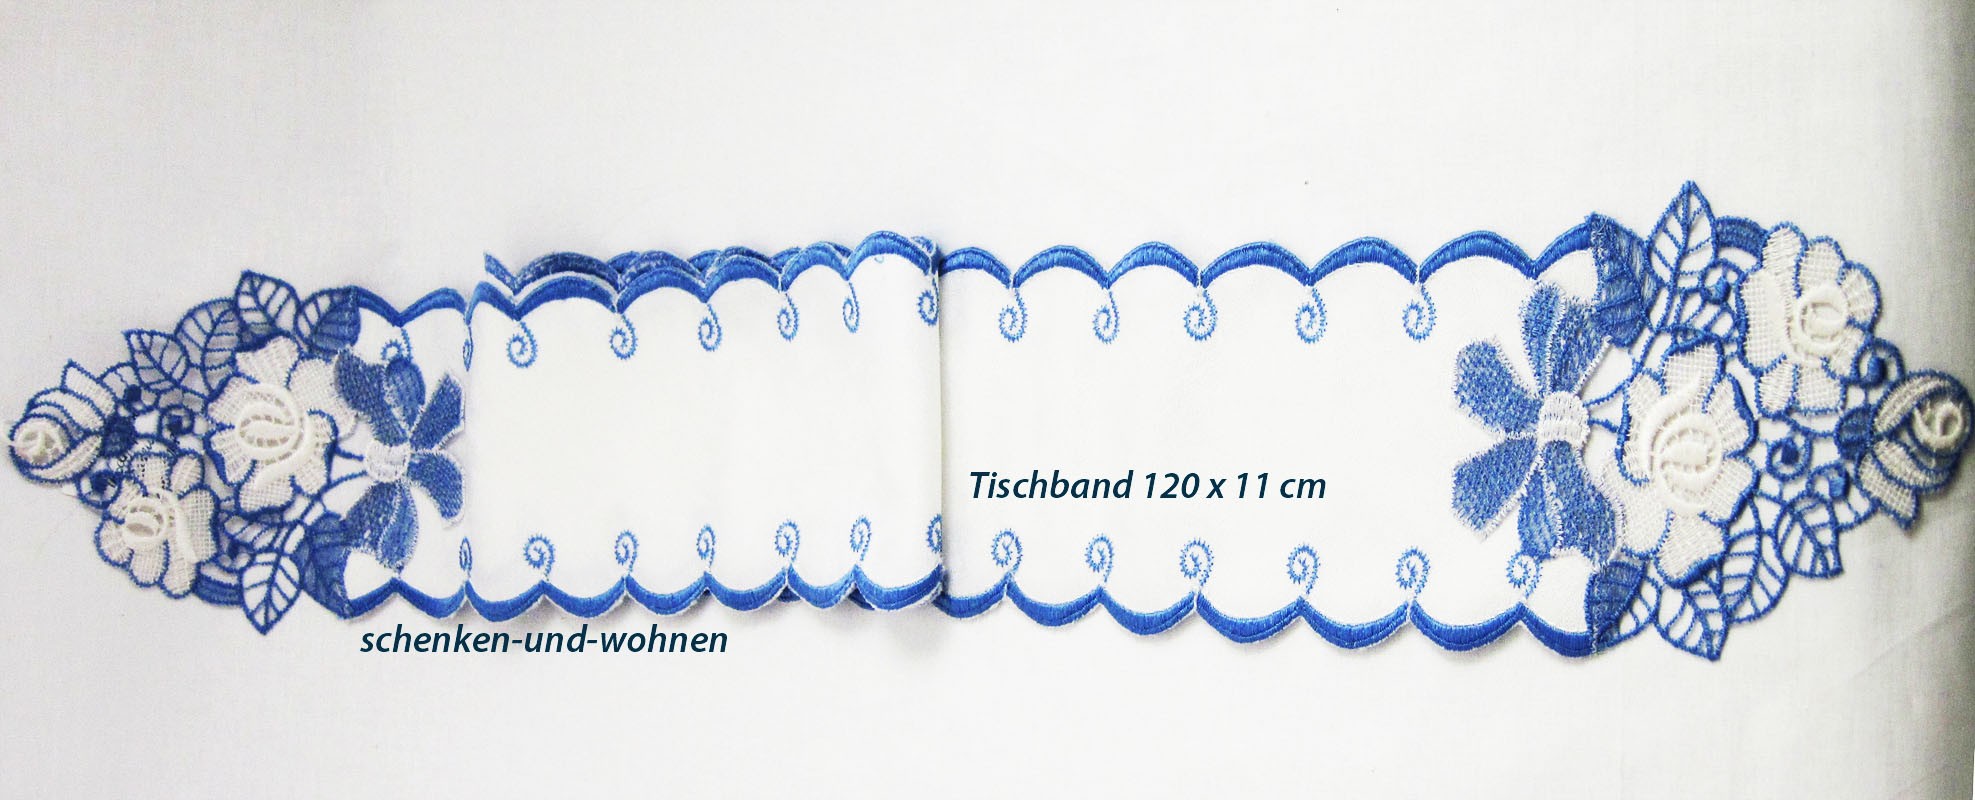 Tischband - Plauener Spitze - blau/weiß mit Rosenmotiv ca. 120 x 11 cm